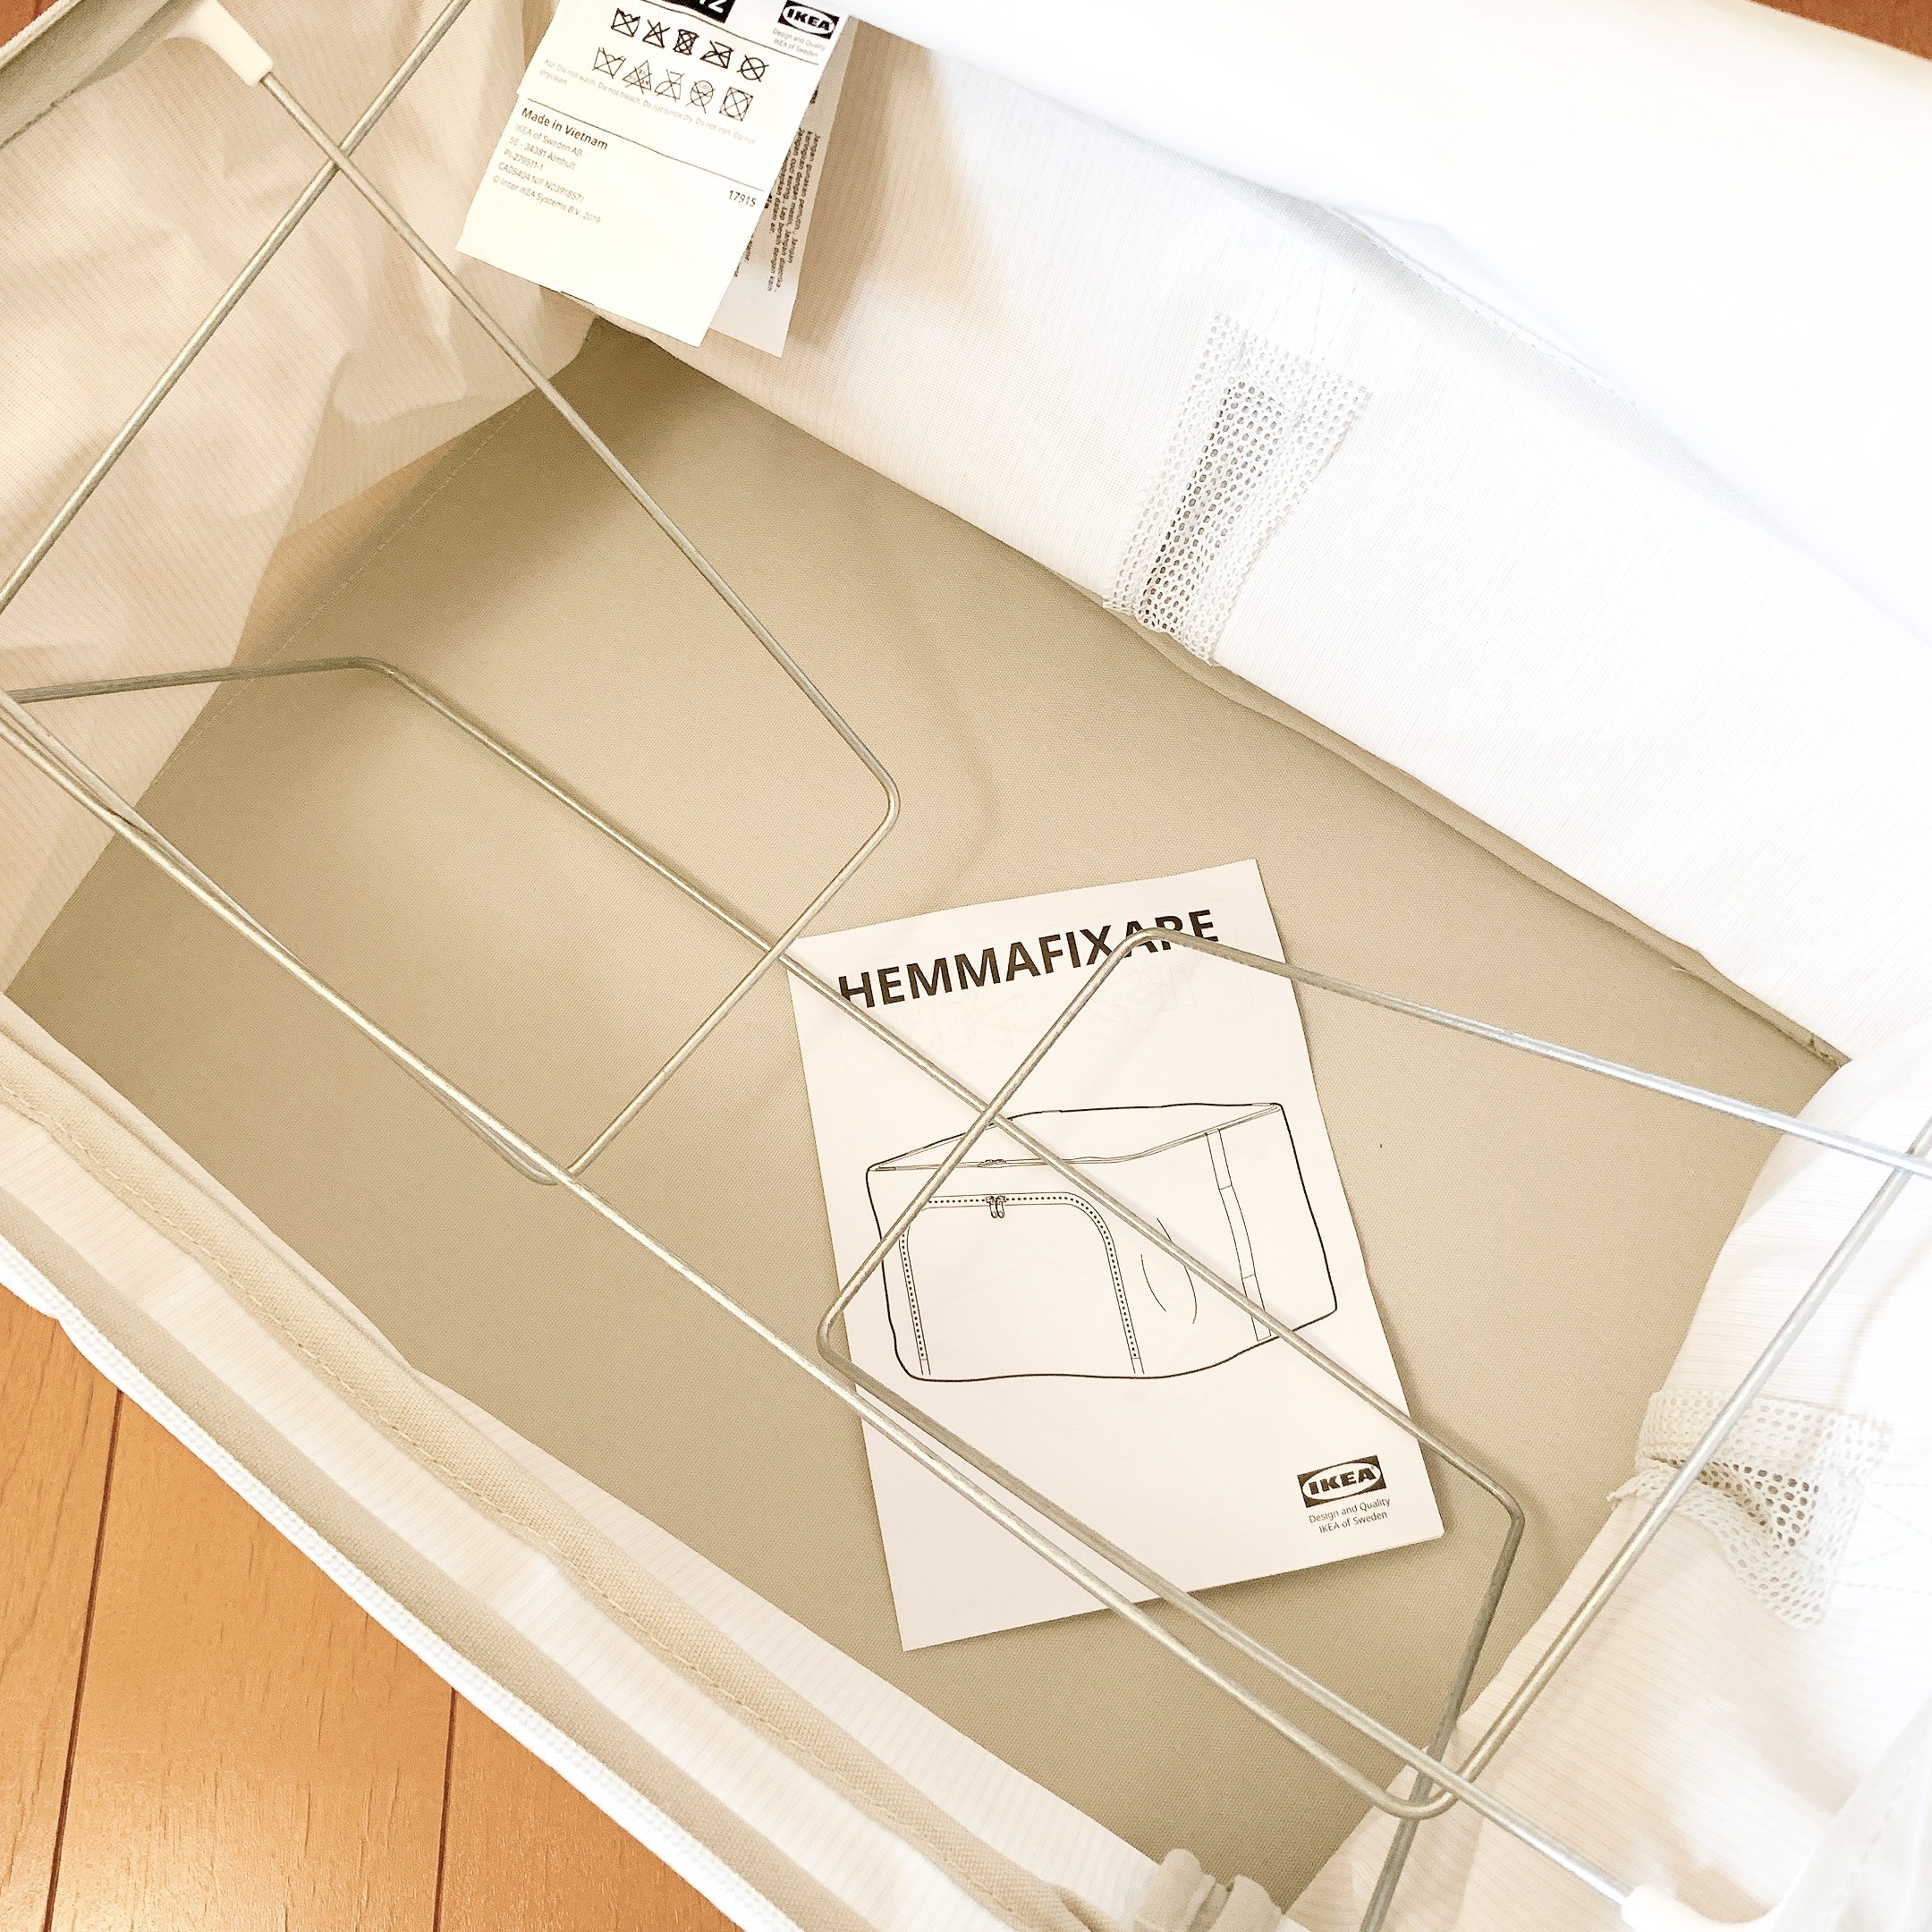 IKEA（イケア）のおすすめ収納「HEMMAFIXARE ヘマフィクサレ 収納ケース」